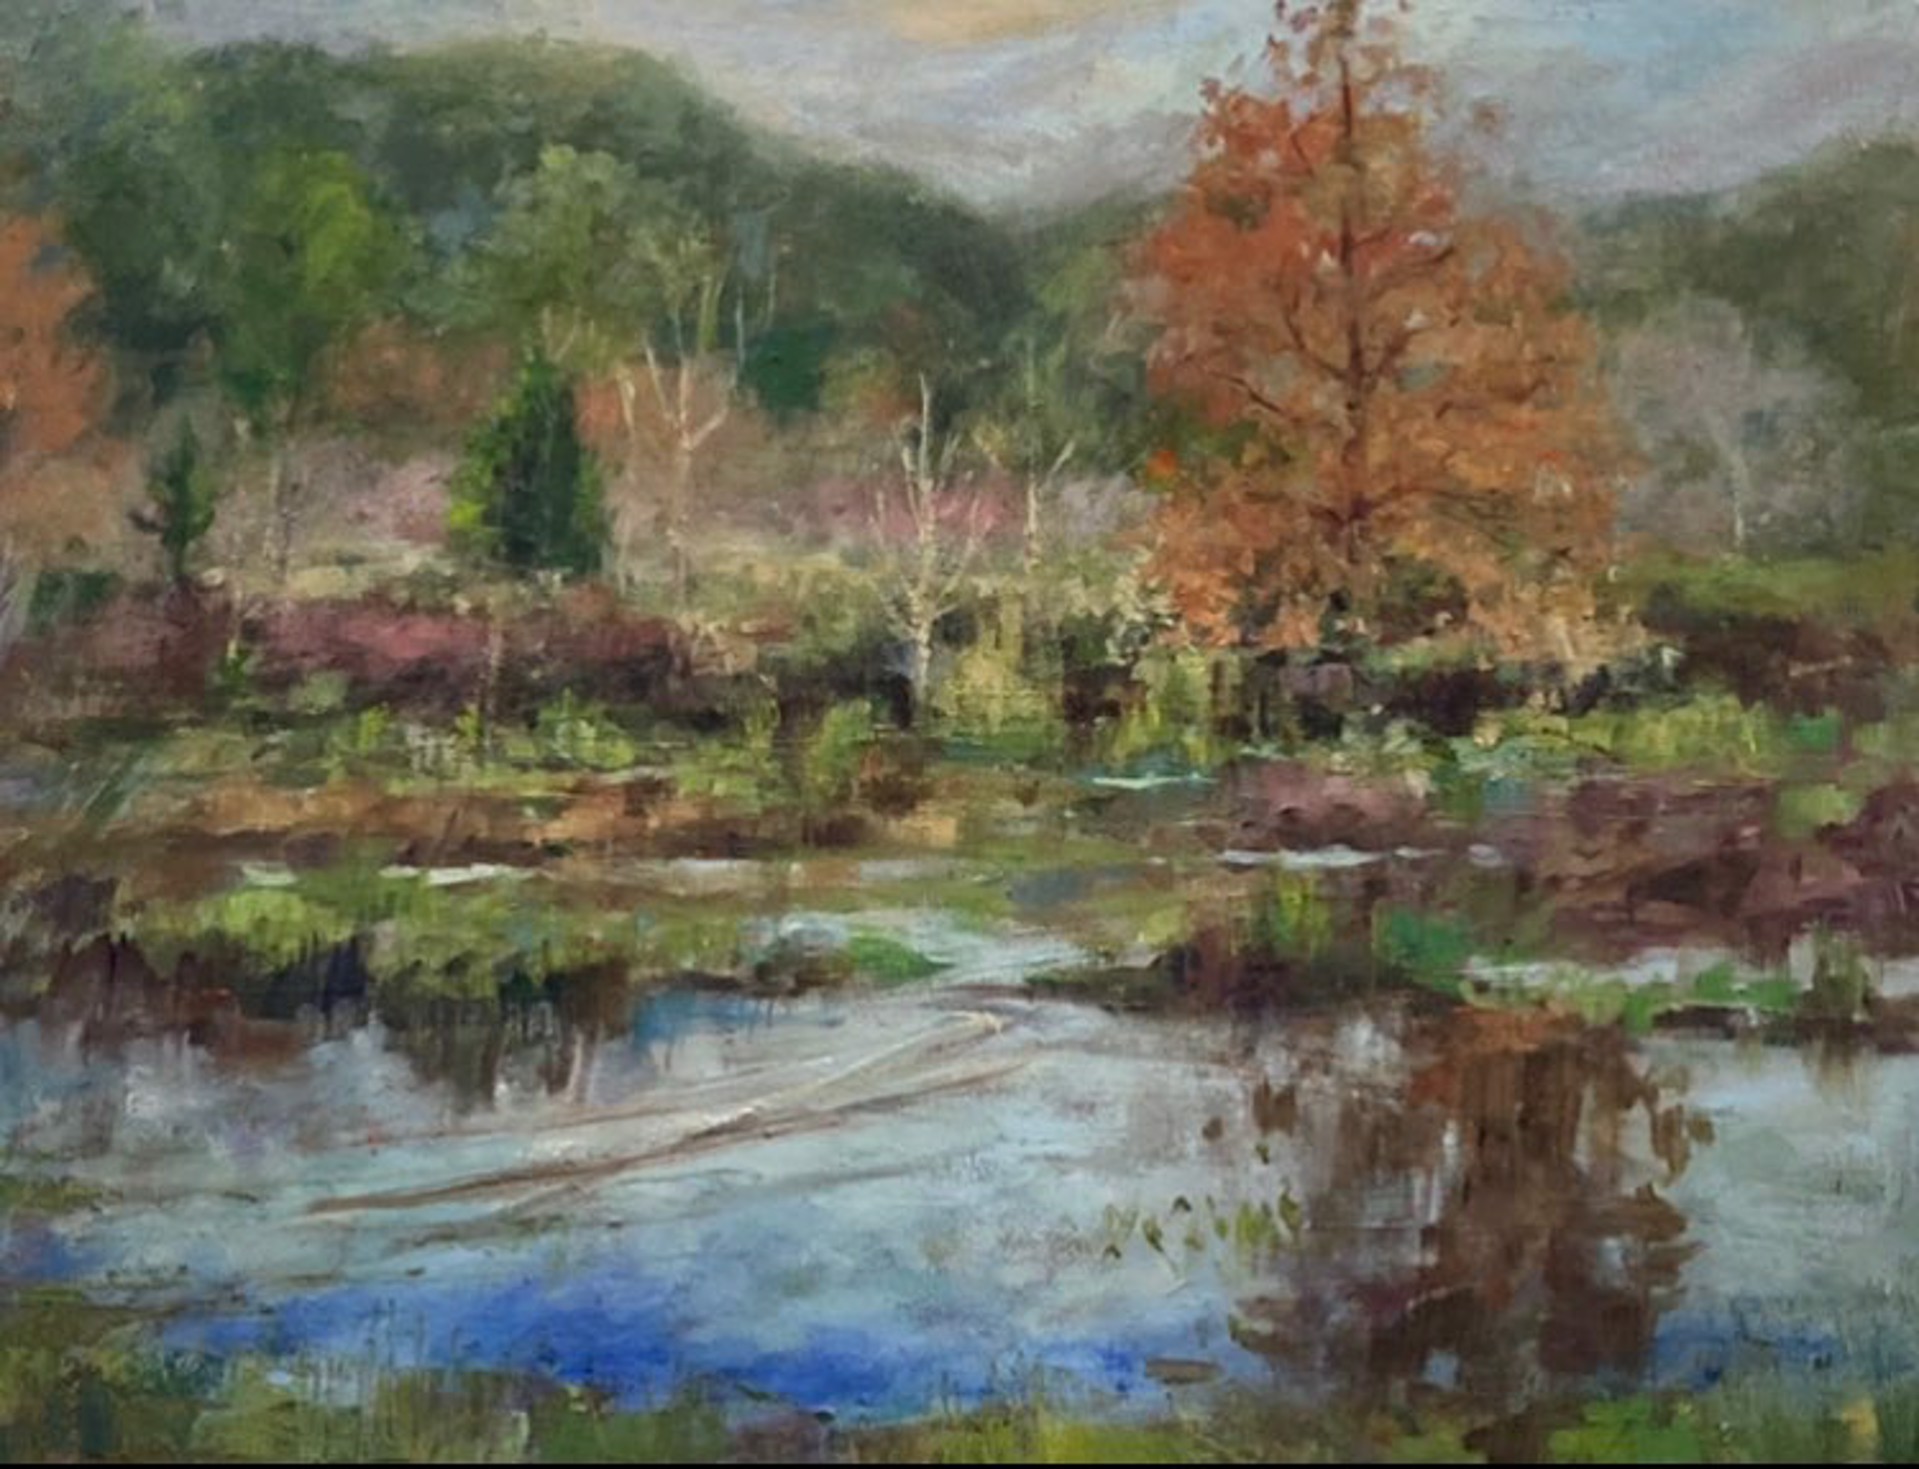 Alabama Swamp by Missy Patrick